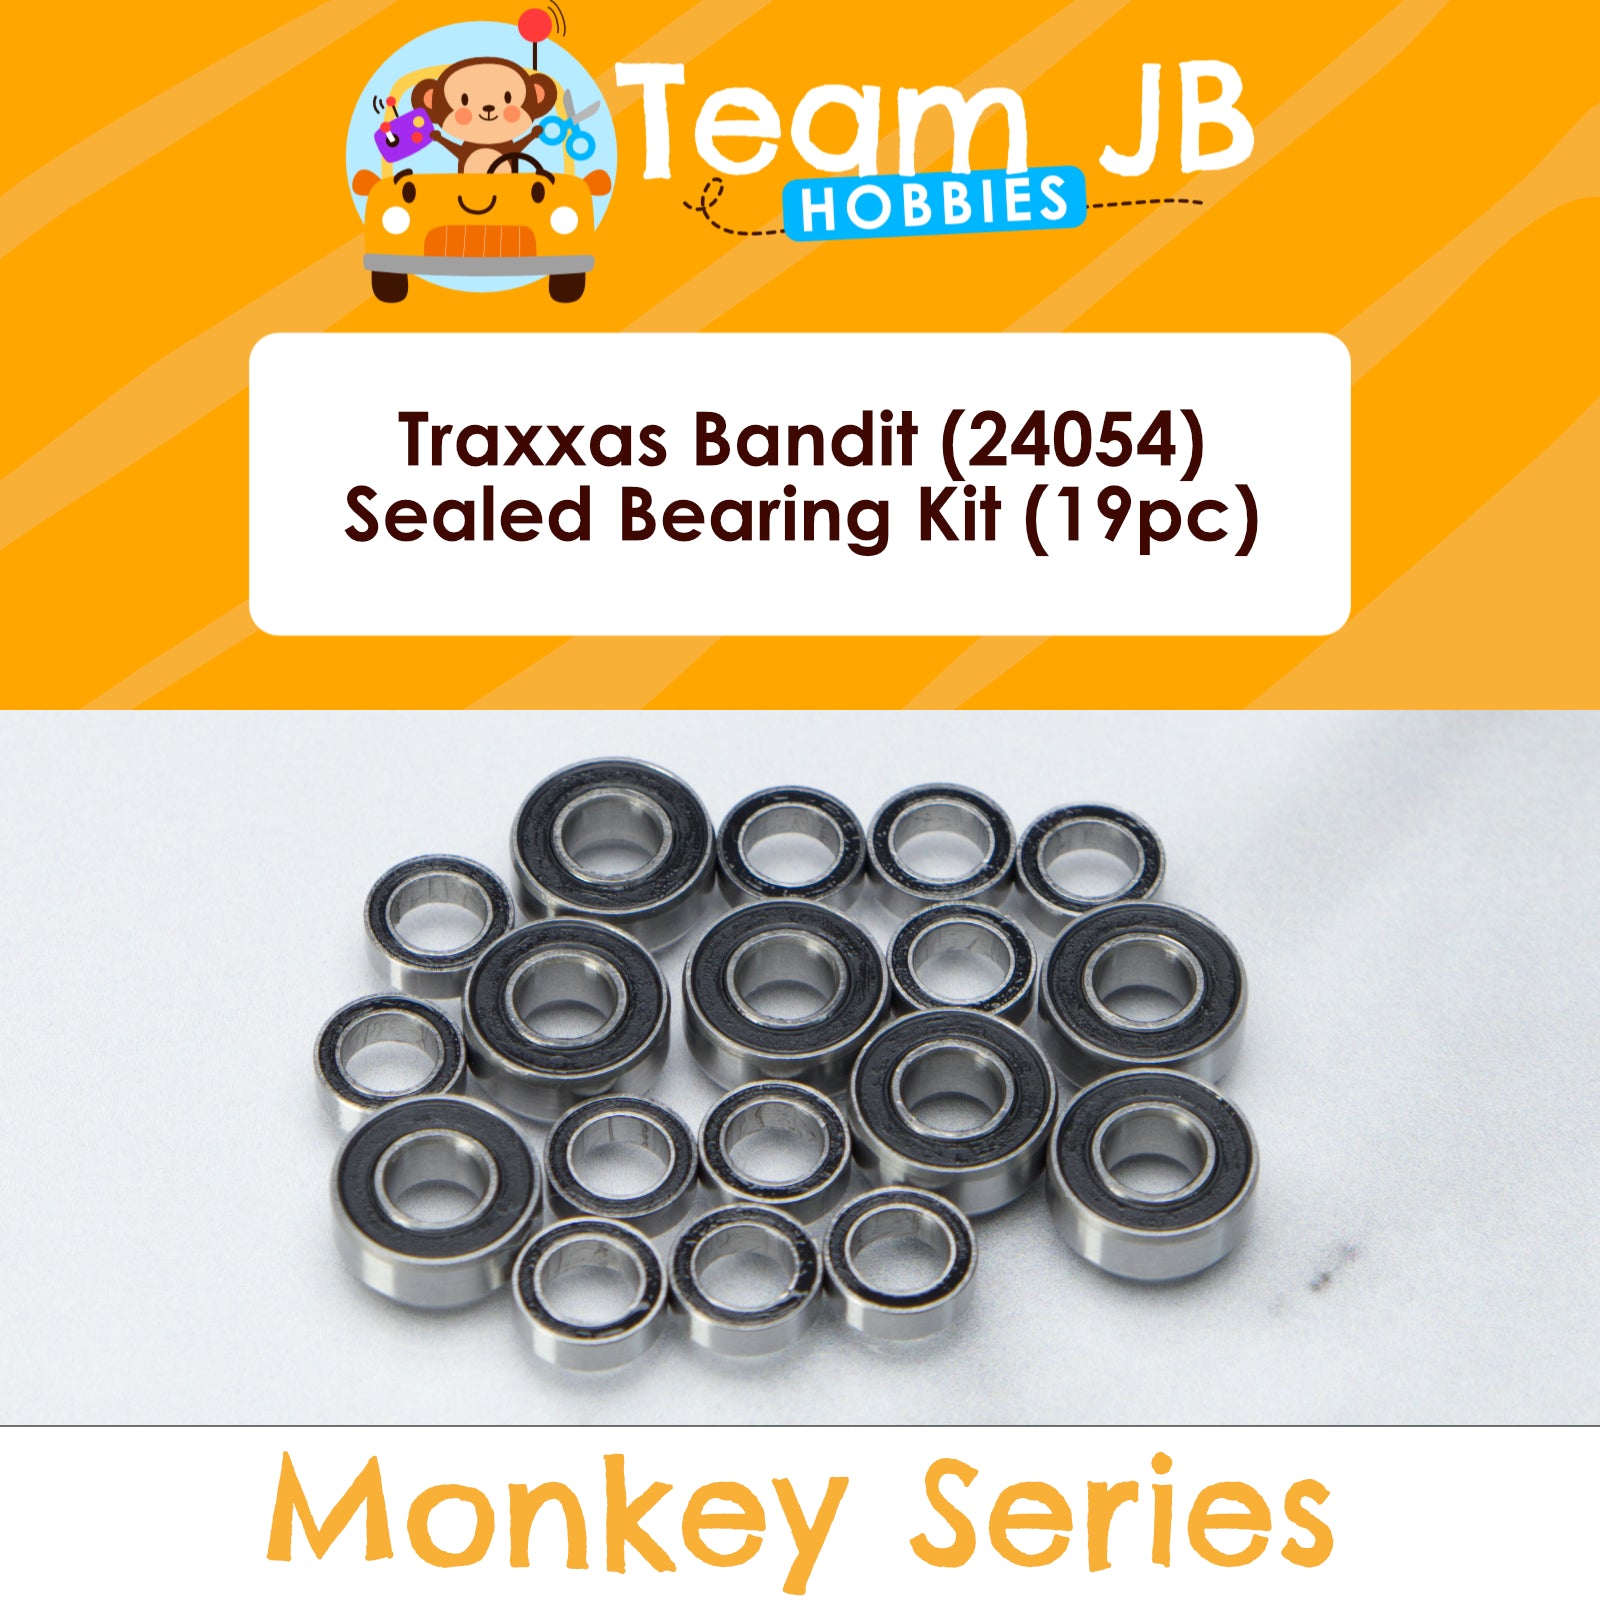 Traxxas Bandit (24054) - Sealed Bearing Kit